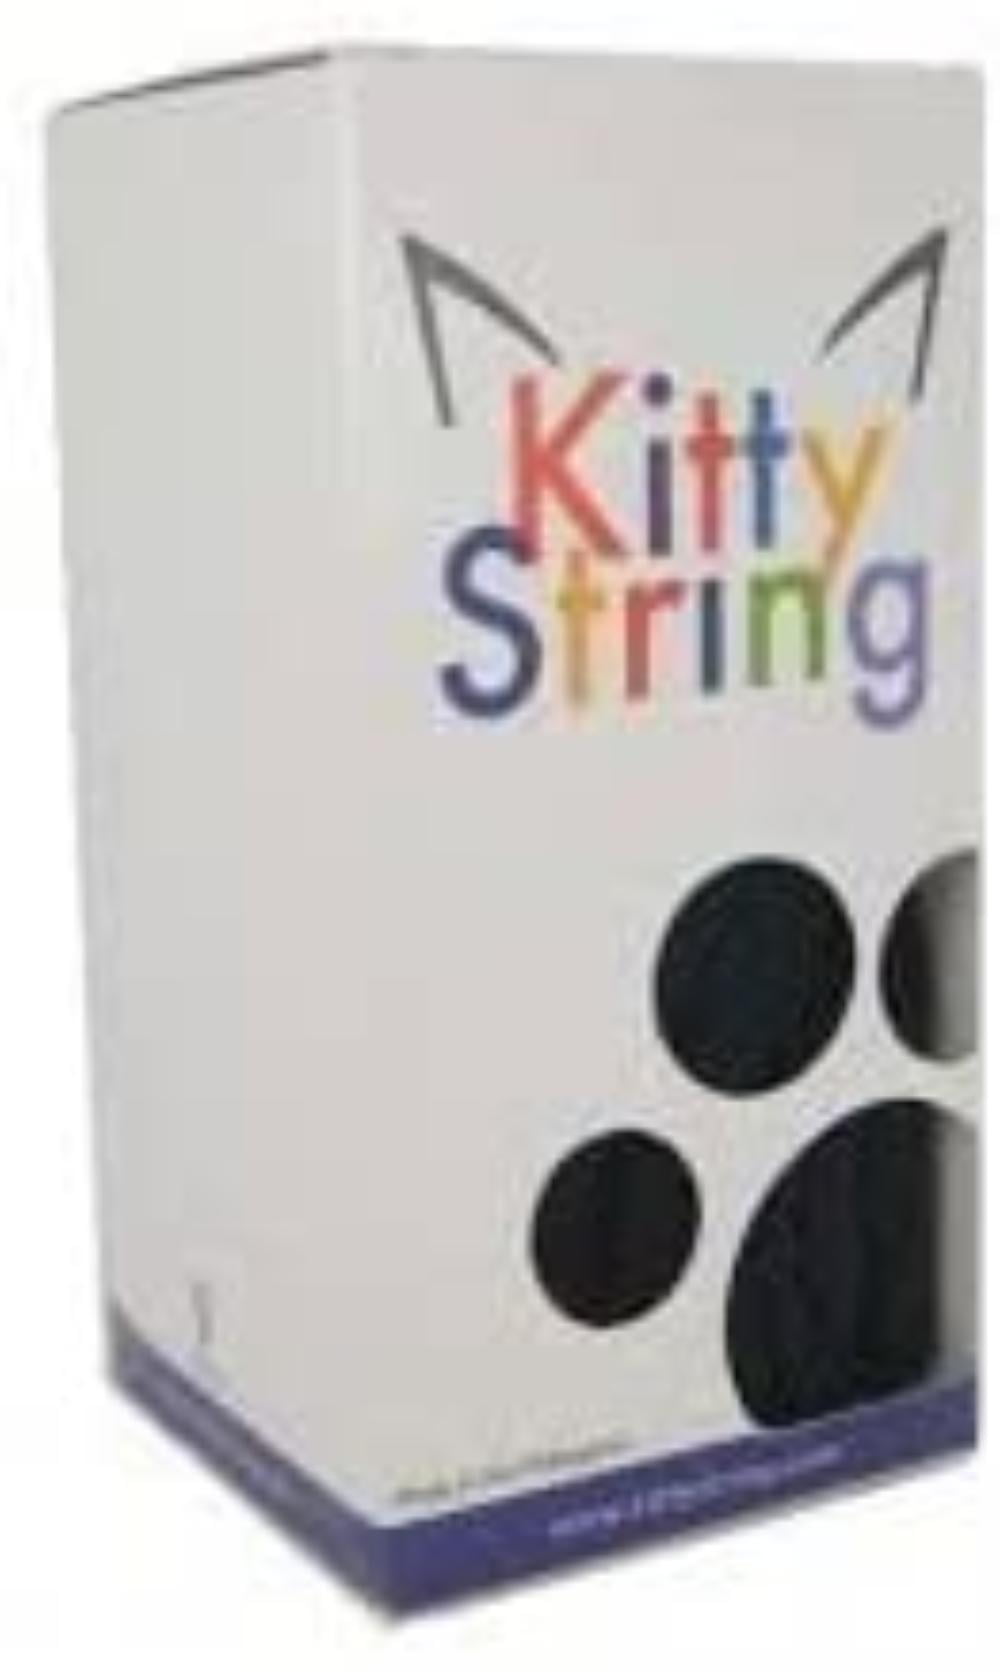 XL Kitty String Yo-Yo String 100 Pack 